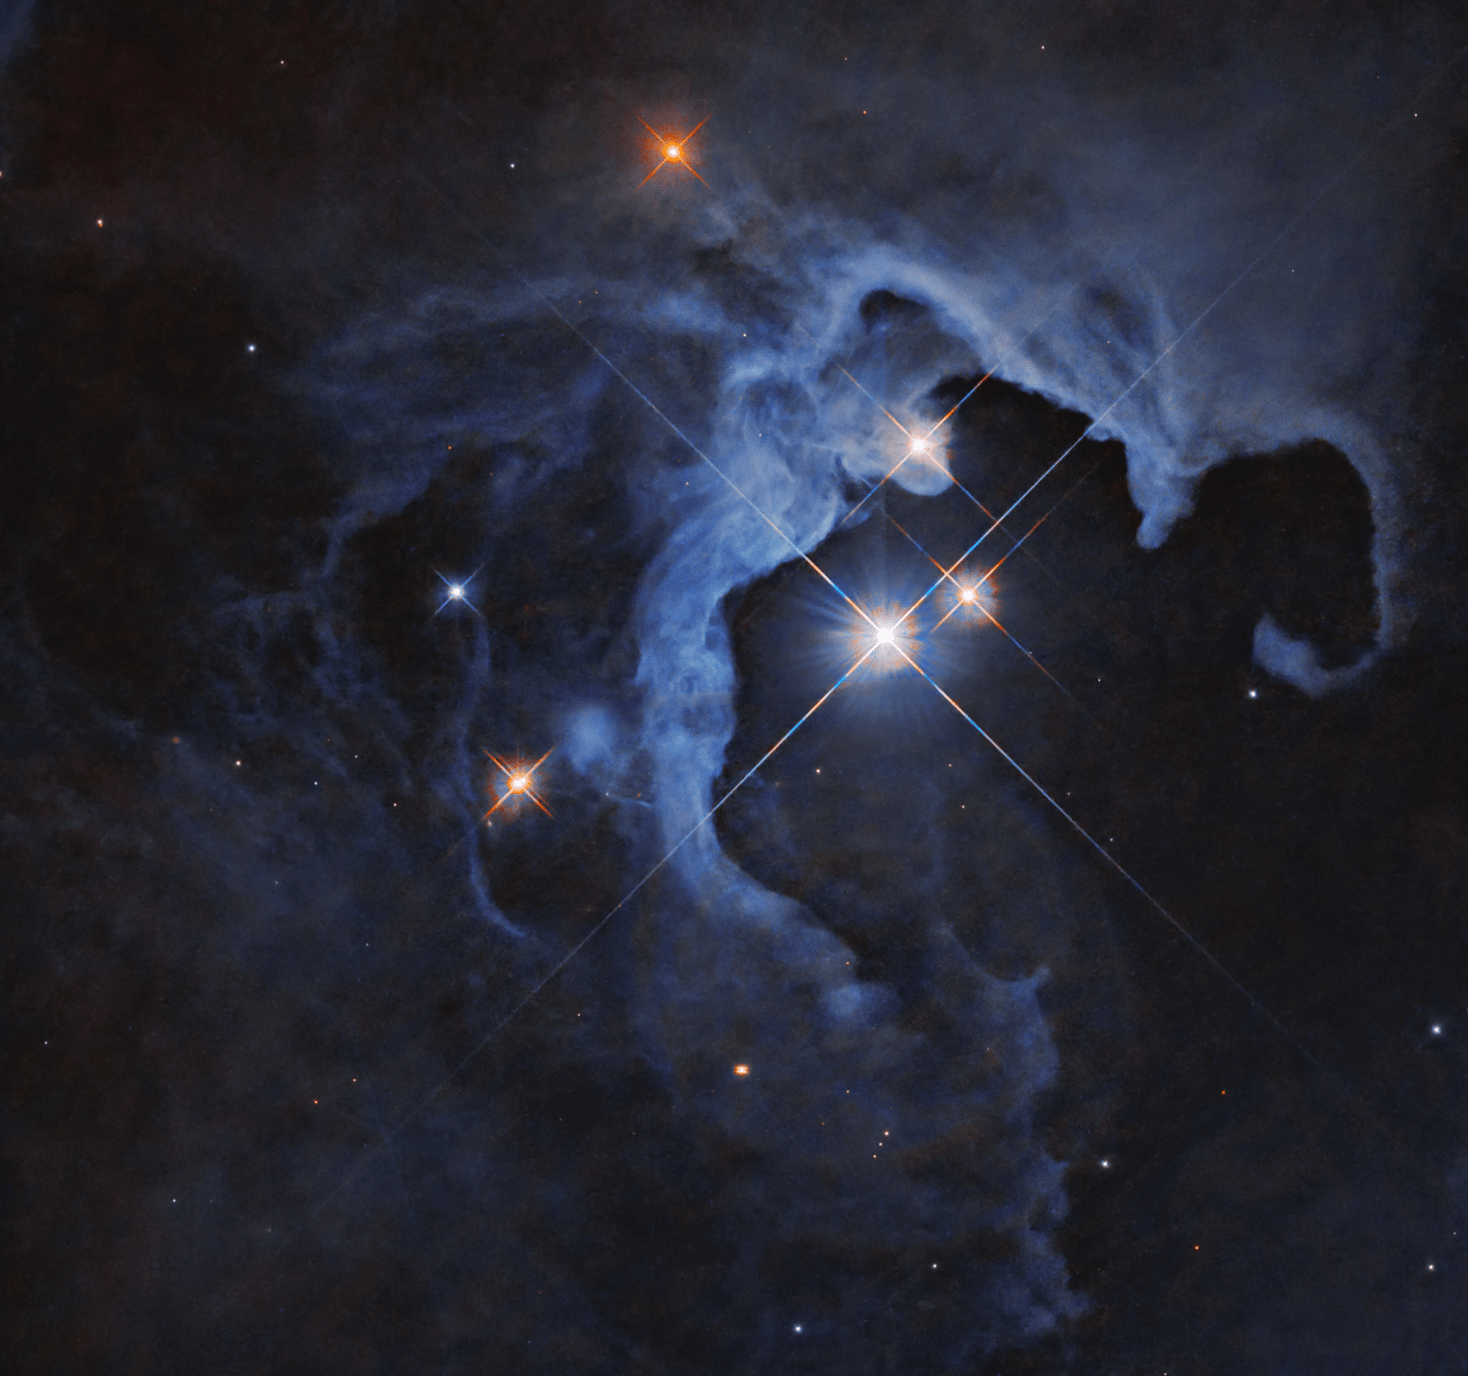 Esta imagen del Hubble muestra un sistema estelar triple en una nebulosa de reflexión, con una nube de gas y polvo curvándose alrededor de varias estrellas brillantes.